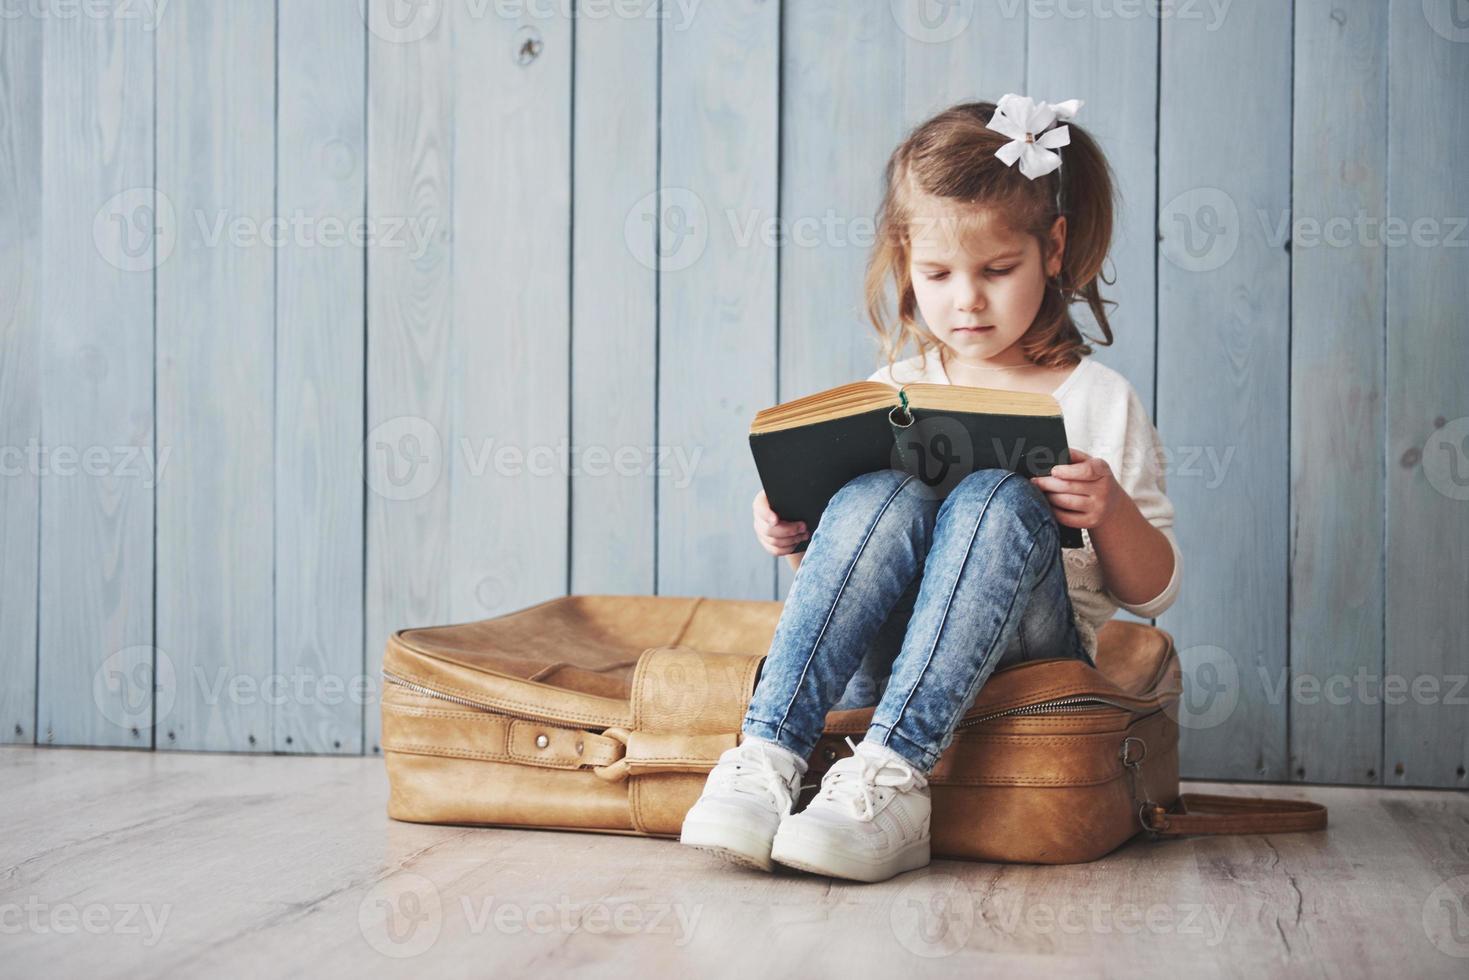 bereit für große Reisen. glückliches kleines Mädchen, das ein interessantes Buch liest, das eine große Aktentasche trägt und lächelt. Reise-, Freiheits- und Vorstellungskonzept foto